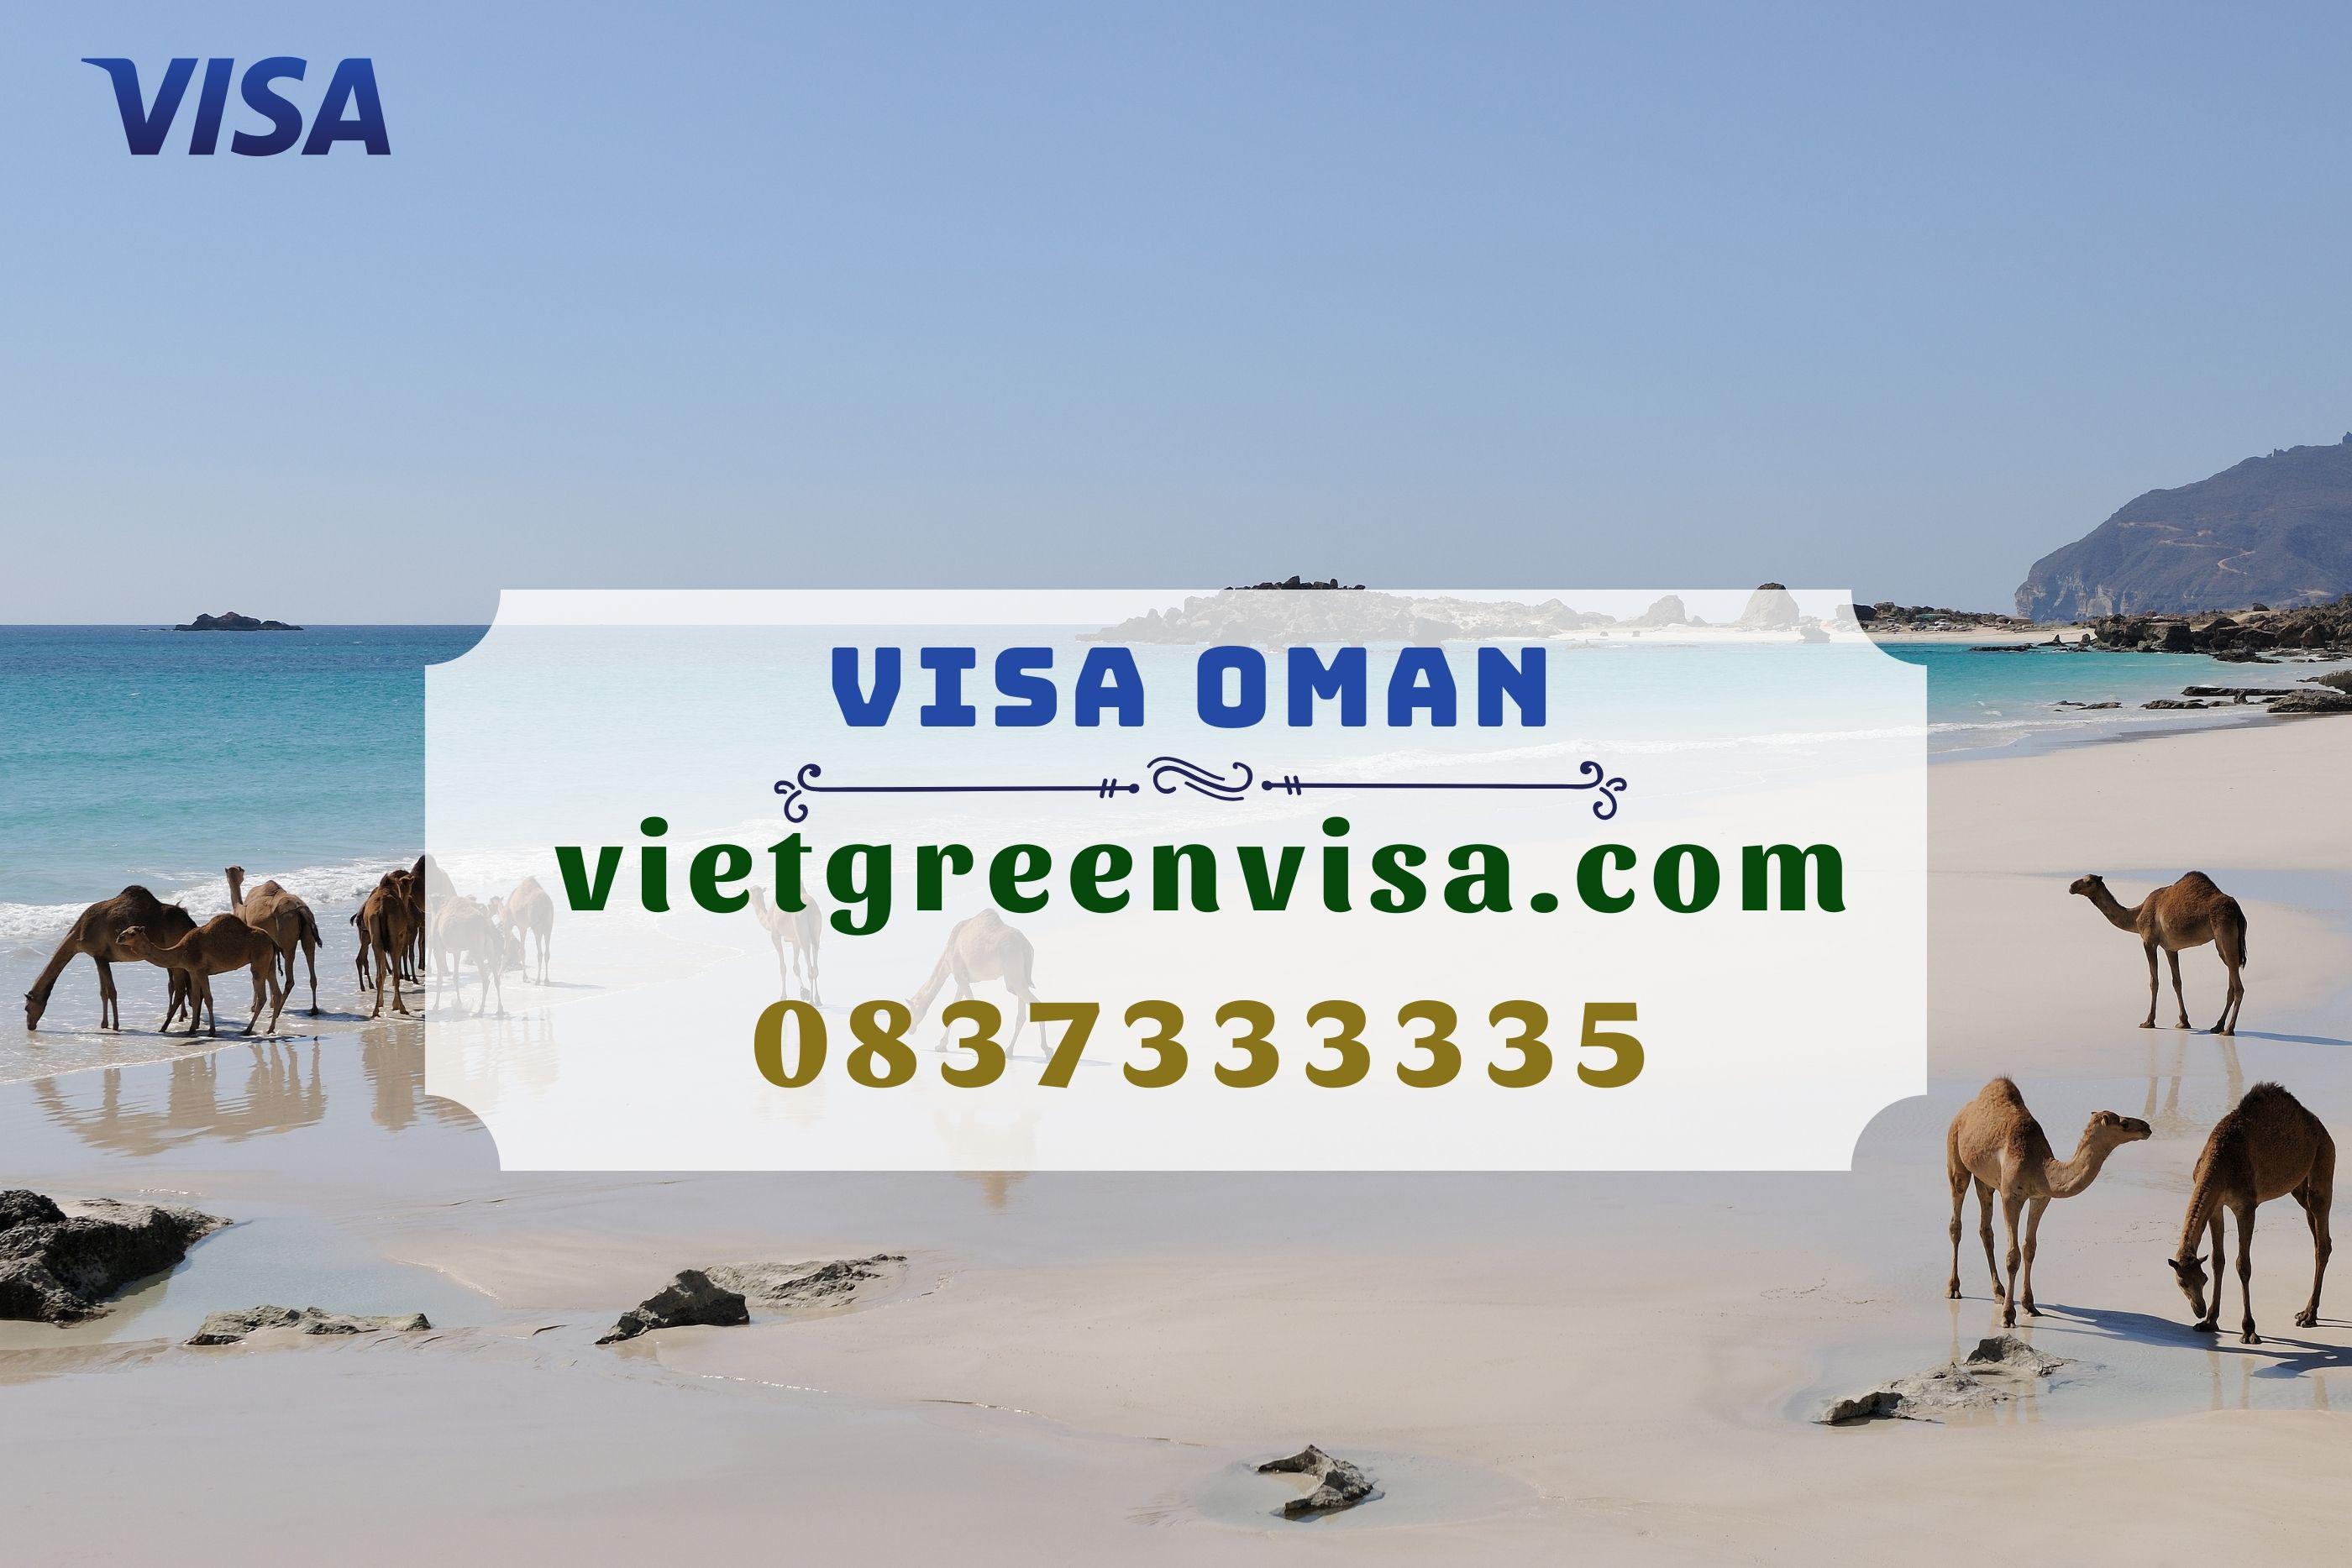 Hướng dẫn các thủ tục xin visa Oman nhanh chóng và hiệu quả